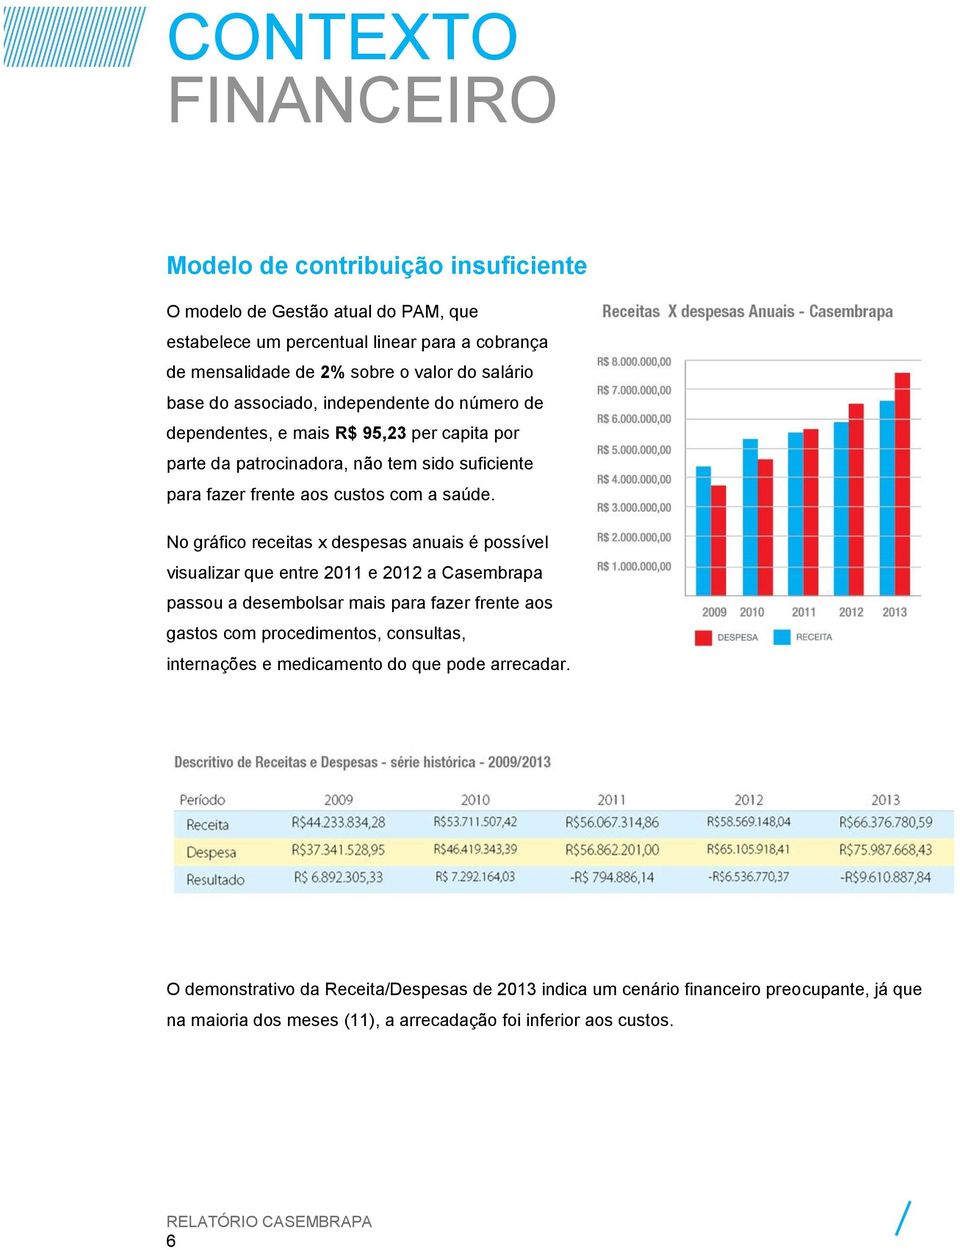 No gráfico receitas x despesas anuais é possível visualizar que entre 2011 e 2012 a Casembrapa passou a desembolsar mais para fazer frente aos gastos com procedimentos, consultas,